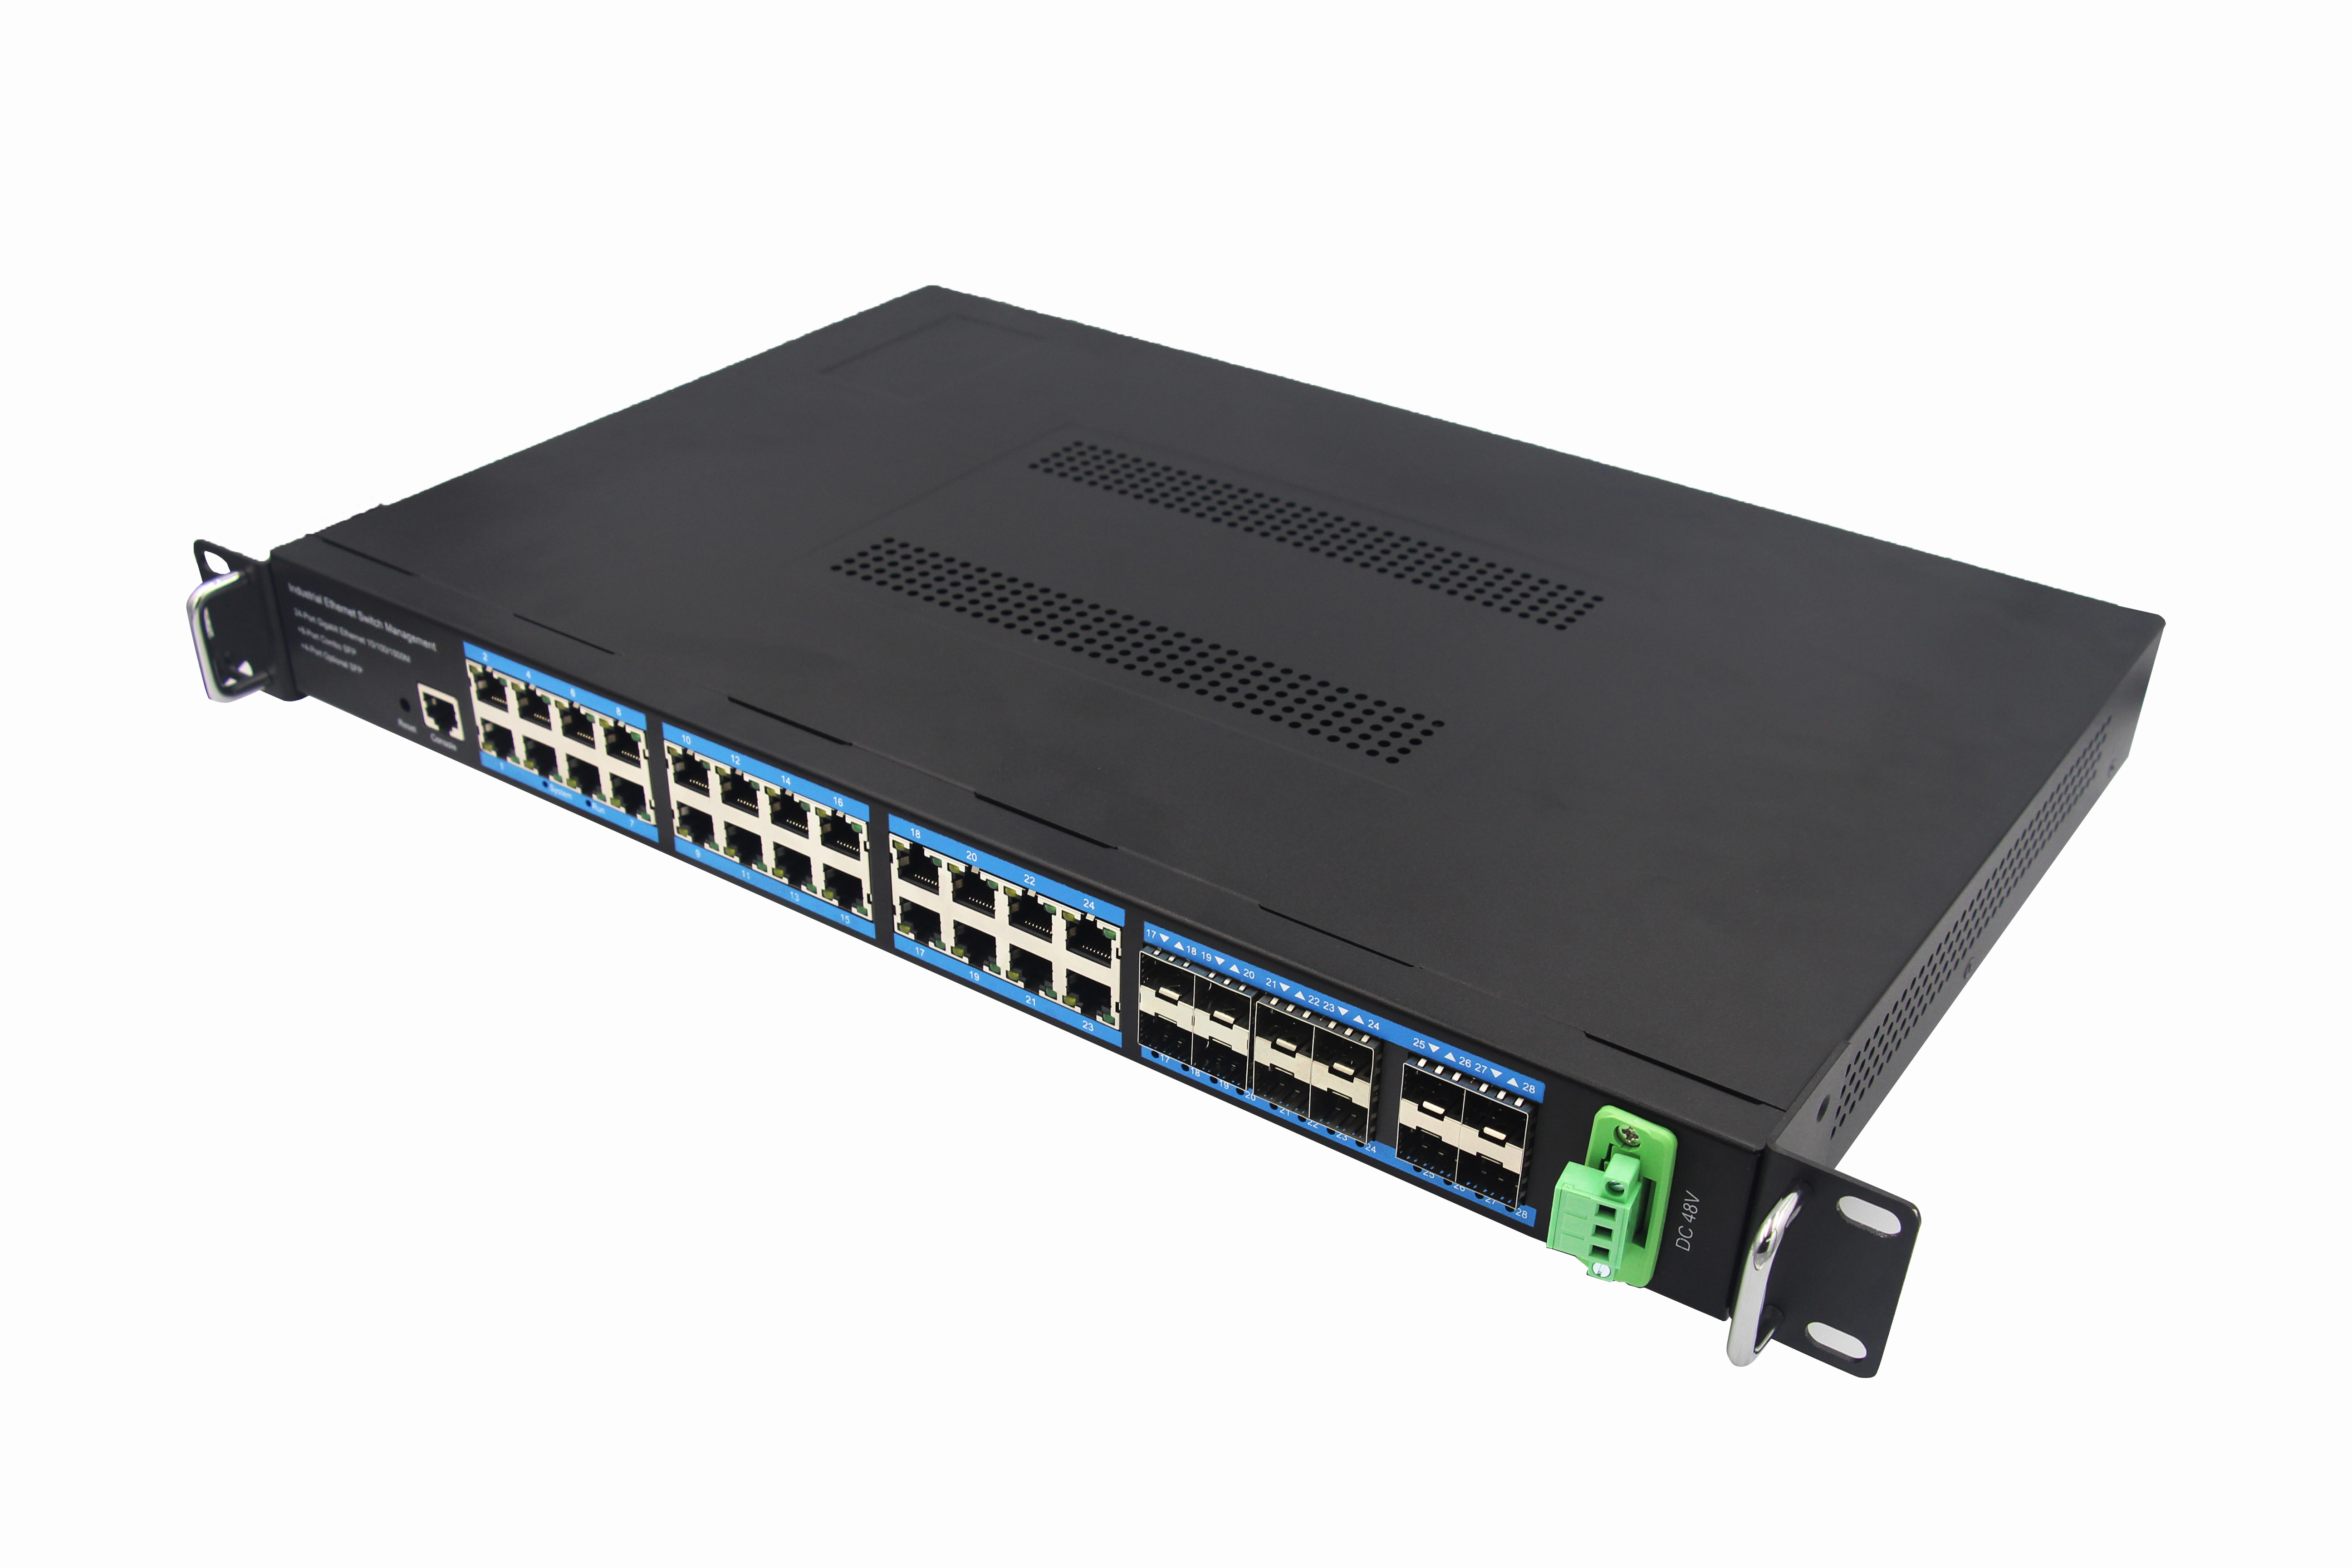 ¡Venta al por mayor! Conmutador Ethernet Industrial gestionado por Gigabit, 24 puertos RJ45, 8 puertos combinados, 4 puertos SFP opcionales